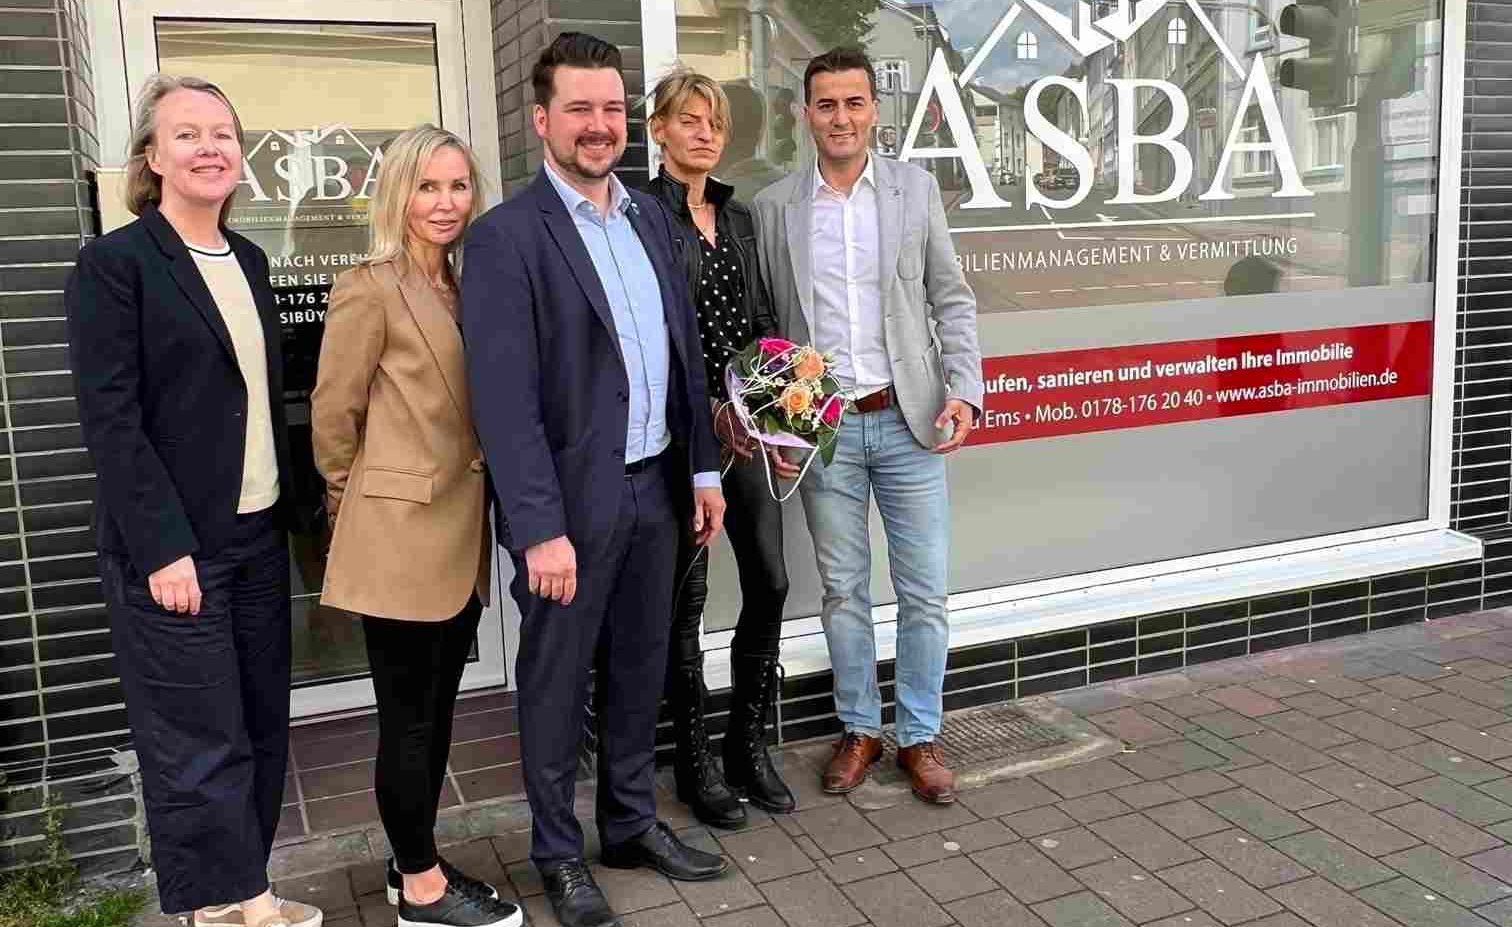 ASBA Immobilien eröffnet neue Geschäftsstelle in Bad Emser Römerstraße